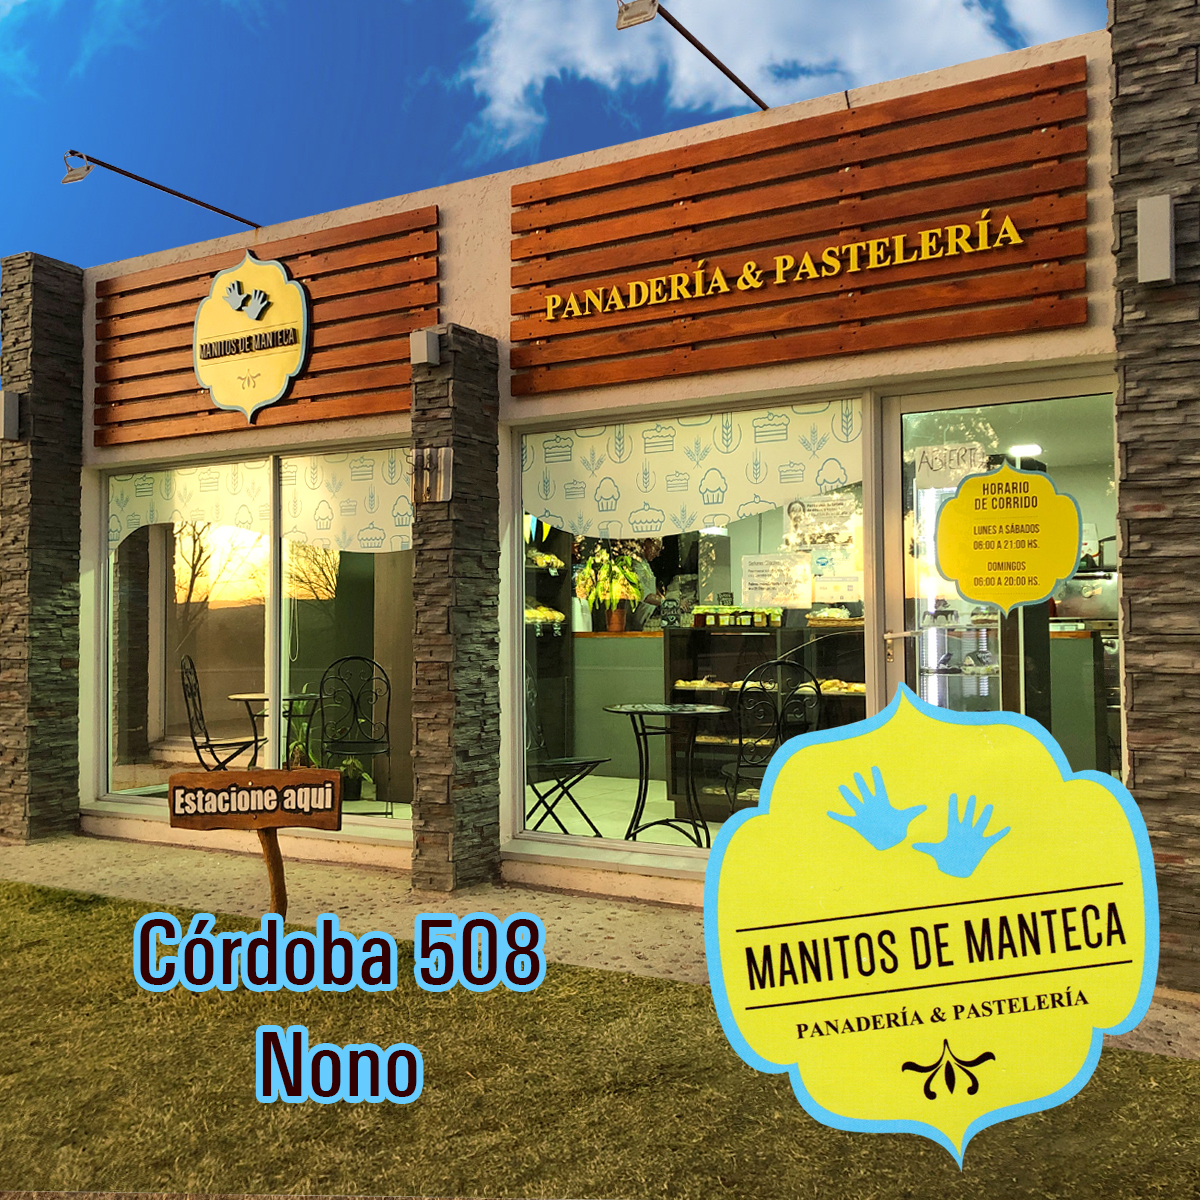 Manitos de Manteca - Nono - Panaderia y pastelería. Exclusivos alfajores. Grisines, libritos, medialunas saladas y dulces, prepizzas, café al paso.